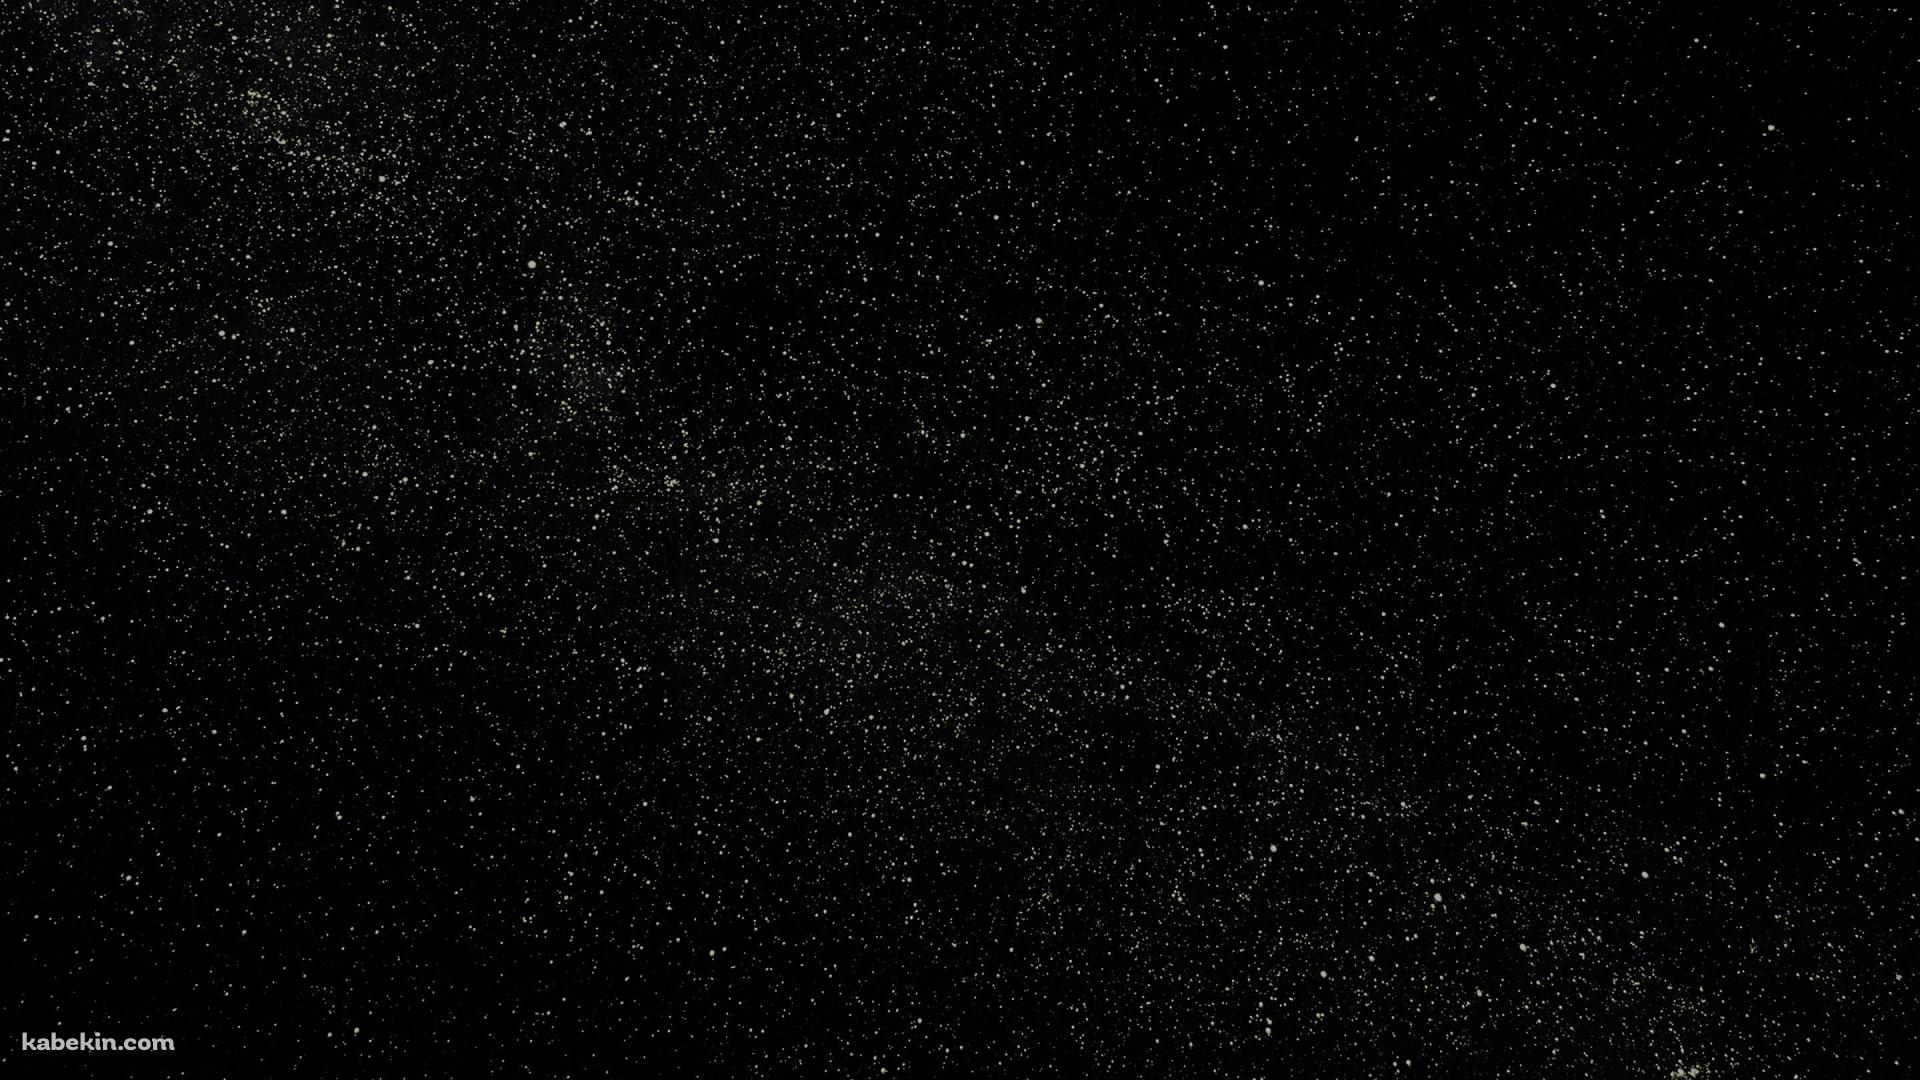 いっぱいの星空の壁紙(1920px x 1080px) 高画質 PC・デスクトップ用